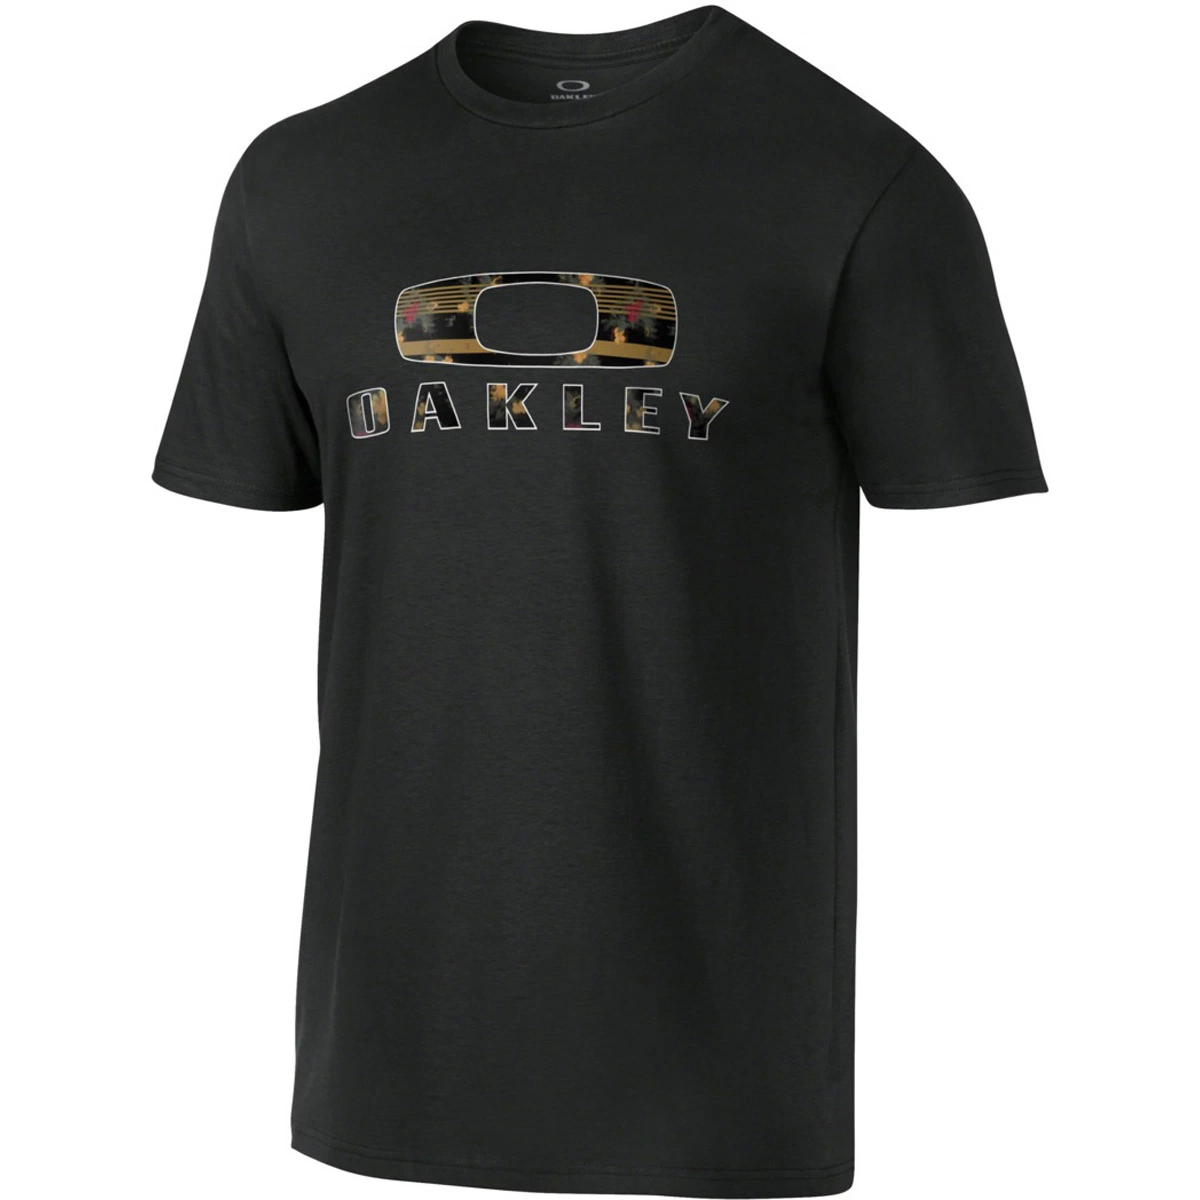 Custom печать хорошего качества хлопка мужчин' S персонализированные T рубашки оптовая торговля Tshirts Tee футболки на заказ